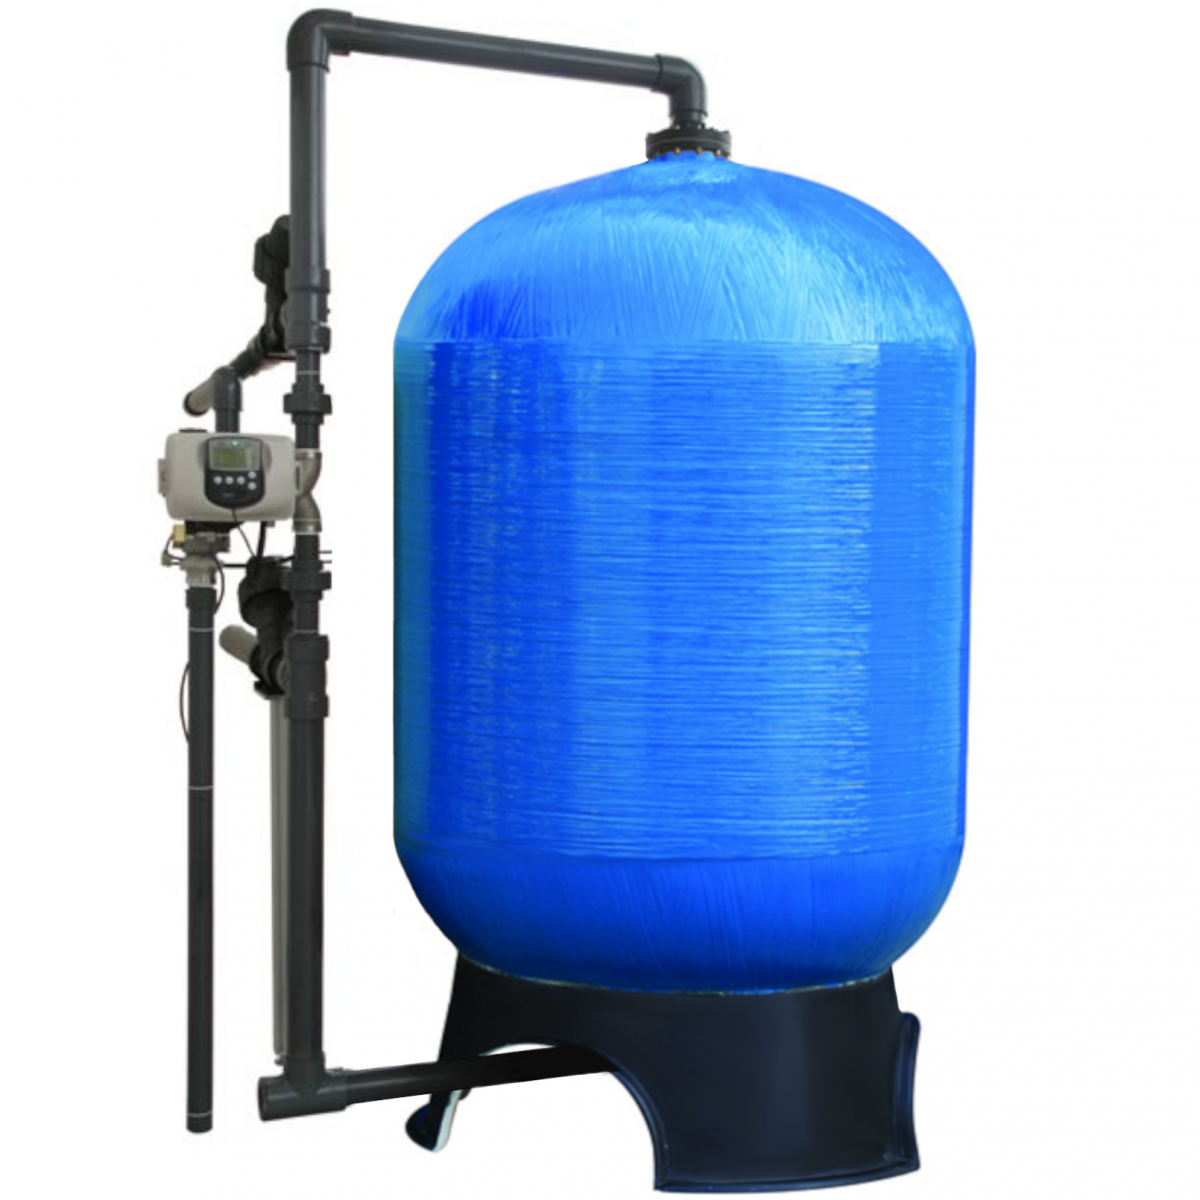 Промышленные фильтры для очистки воды. Abkmnh обезжелезивания msfас- 2821 BWT. Фильтр обезжелезивания воды. Промышленные фильтры обезжелезивания. Фильтр для обезжелезивания воды из скважины.